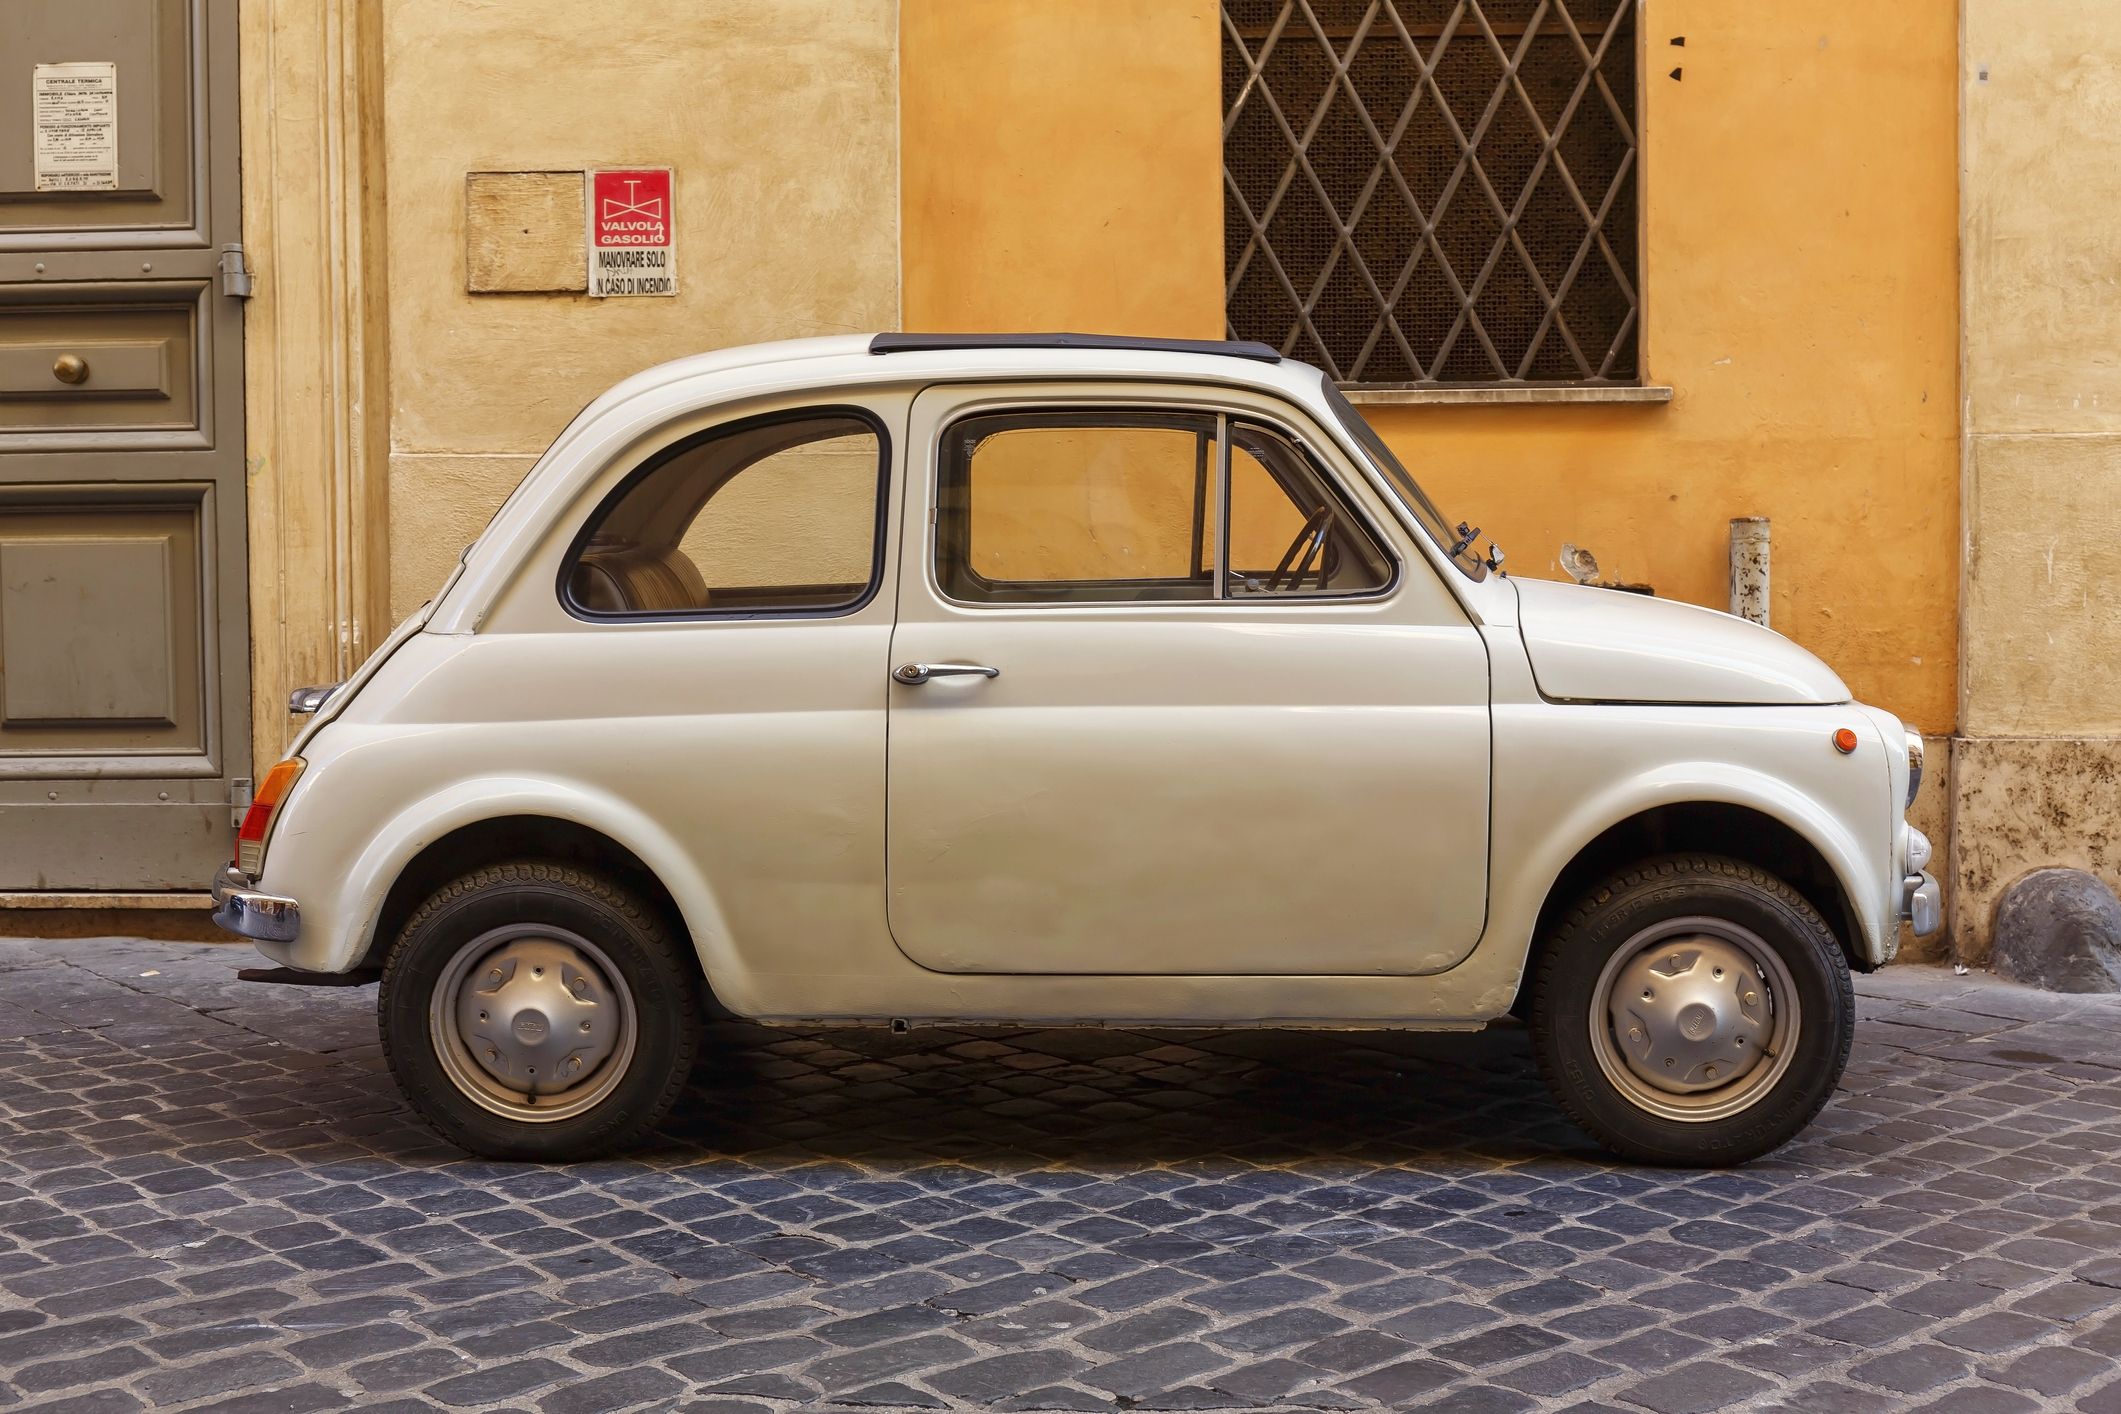 Fiat 500, storia dell'auto più amata dagli italiani (dal 1957)